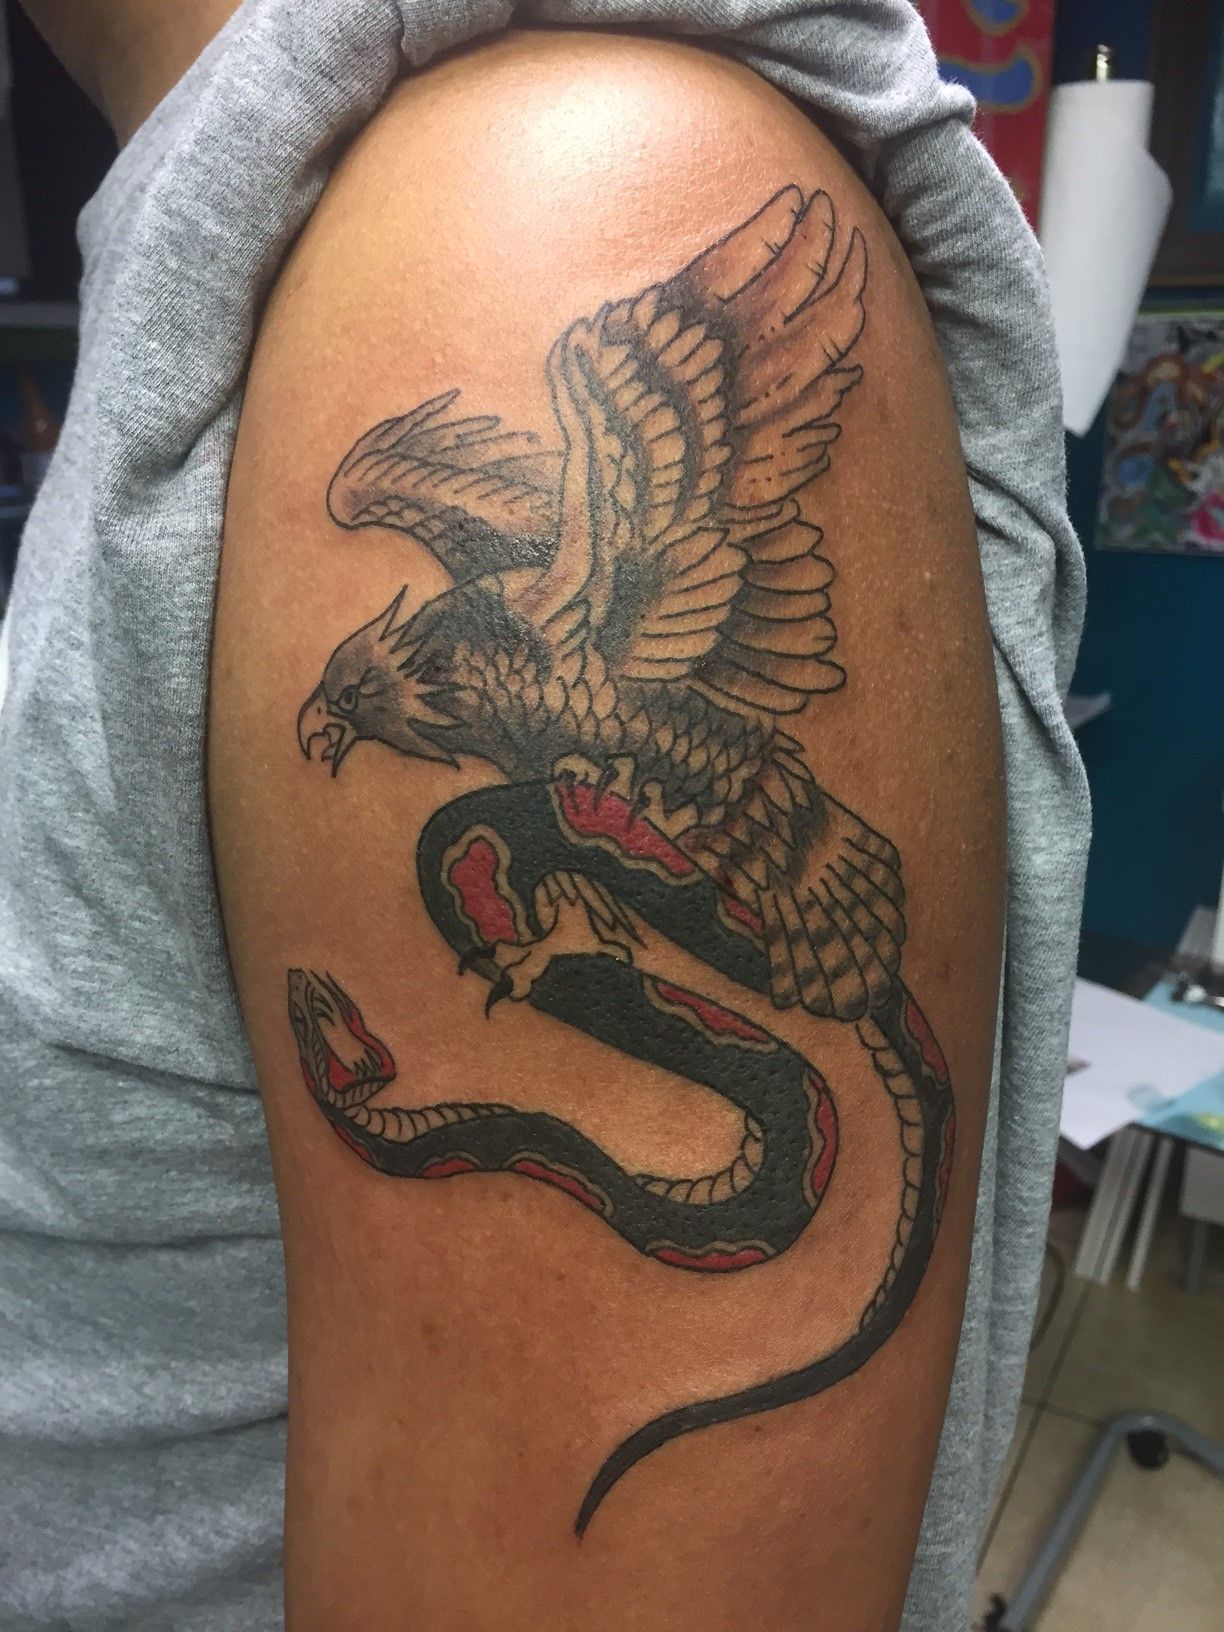 i got cobra commander tattooed on me today  HissTankcom